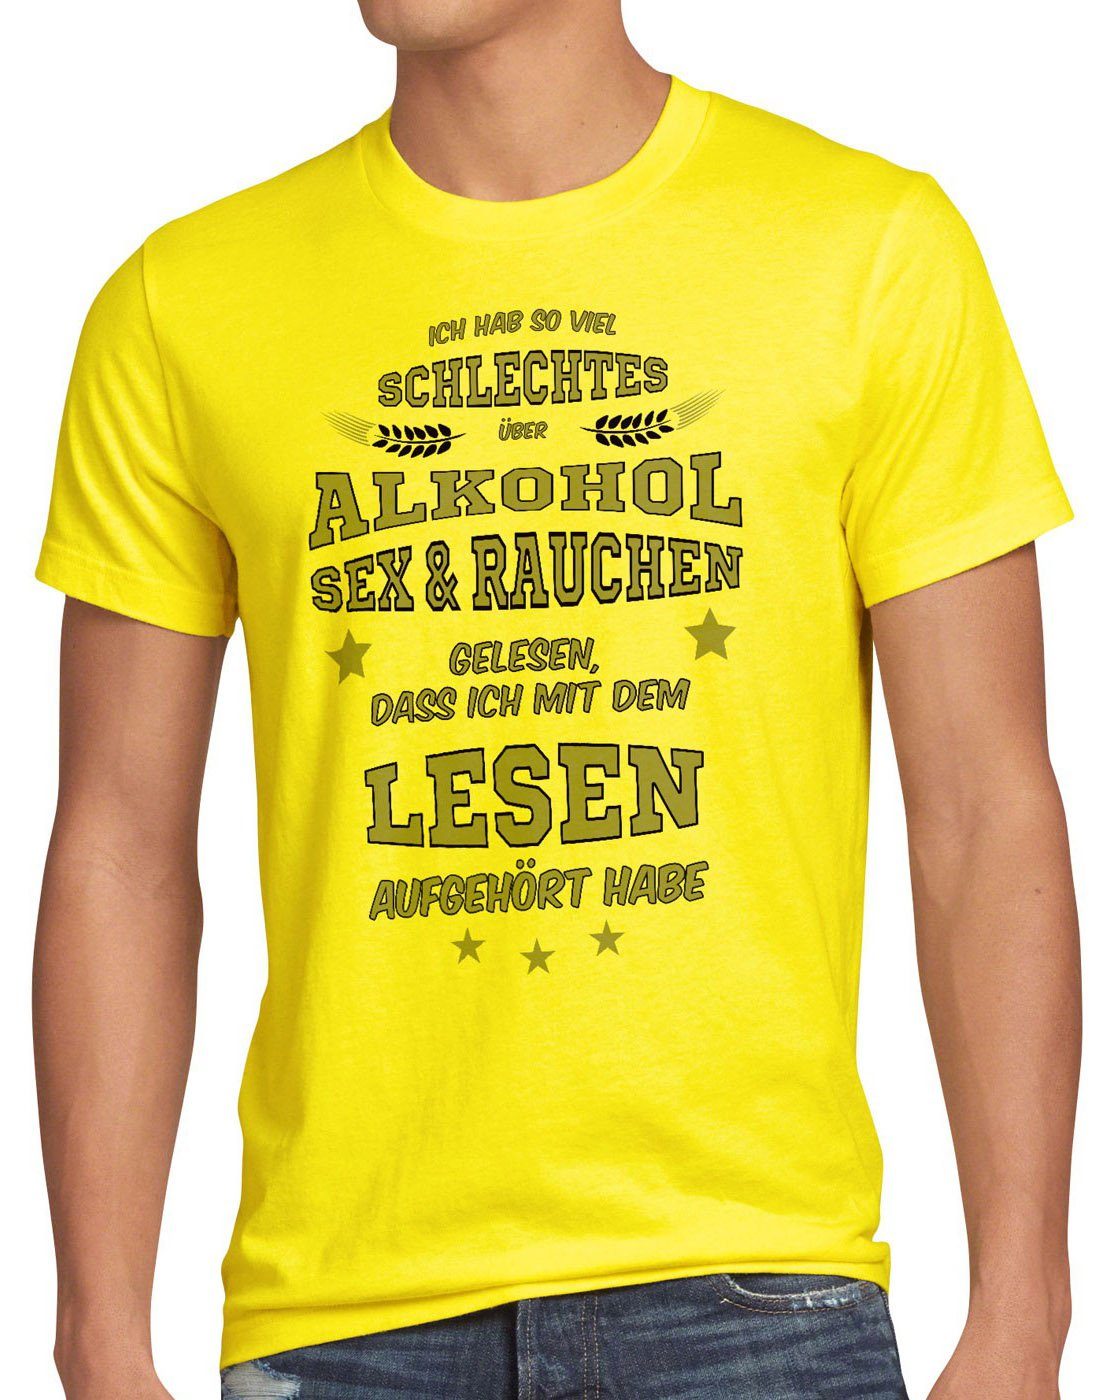 gelesen style3 T-Shirt Herren Sex Rauchen Viel Print-Shirt gelb schlechtes Alkohol Spruch Funshirt Fun